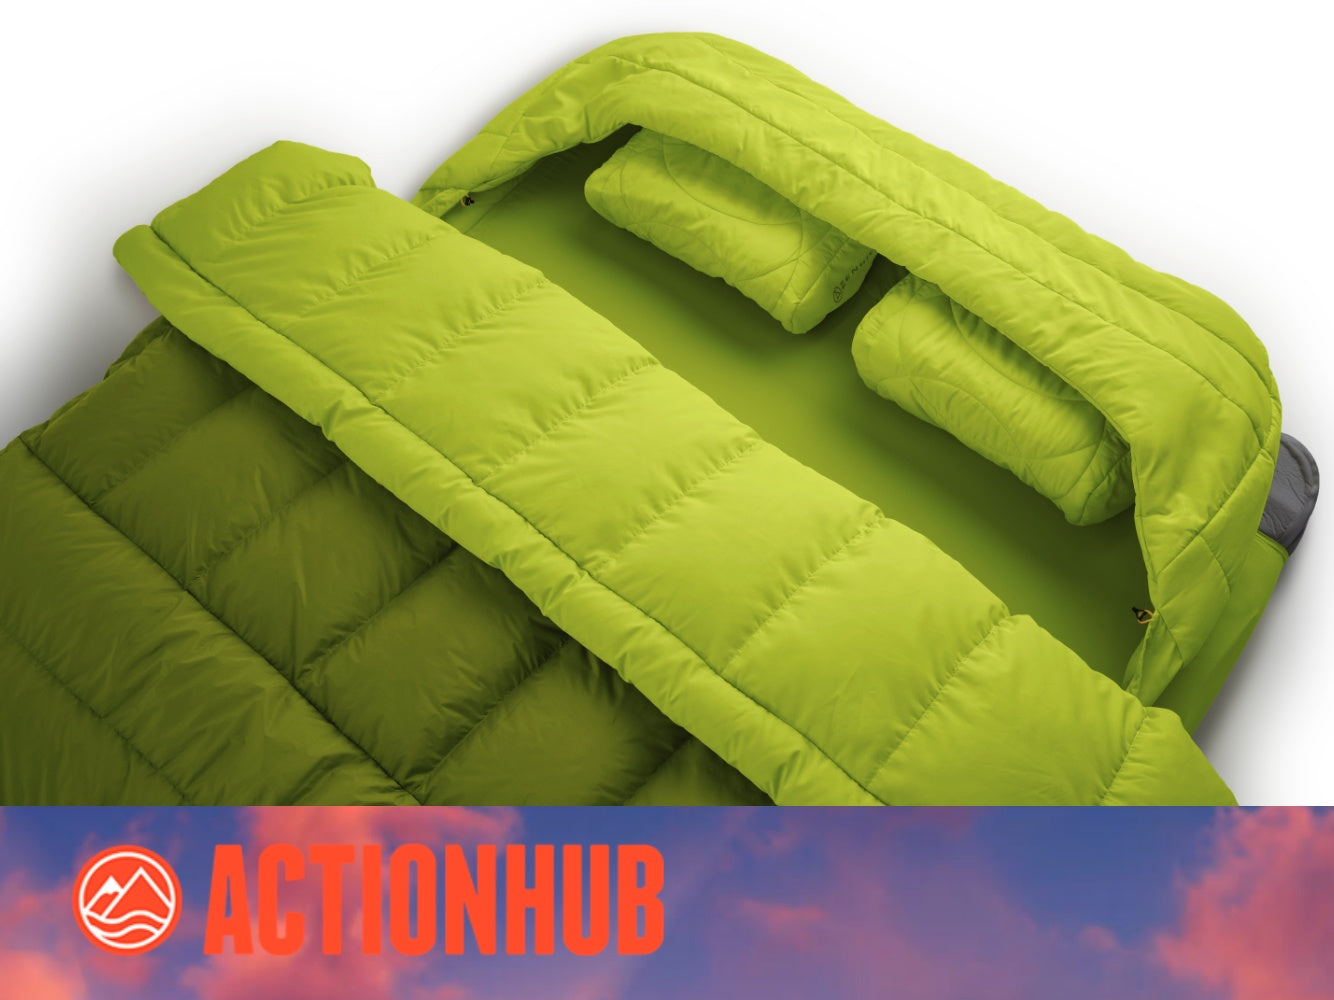 PRESS: ActionHub reviews the Zenbivy Double Bed